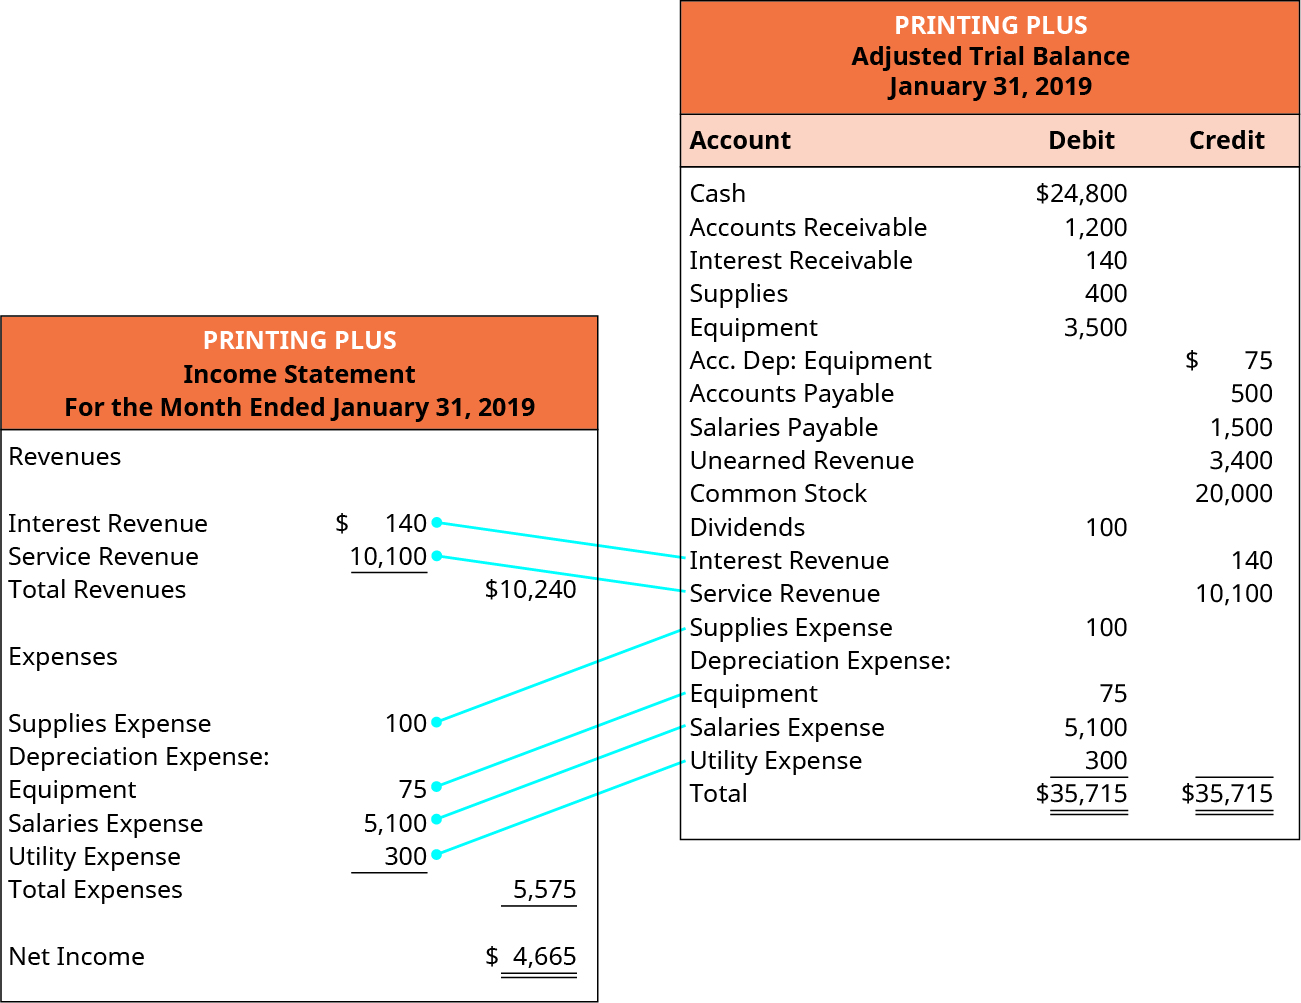 Printing Plus，截至2019年1月31日止月份的损益表。 收入：利息收入140美元；服务收入10,100美元；总收入10,240美元。 费用：用品费用 100；折旧费用：设备 75；工资支出 5,100；公用事业费用 300；总支出 5,575。 净收入为4,665美元。 2019年1月31日的Printing Plus调整后试算表位于损益表的右侧，其中行将调整后试算表中的损益表账户与损益表中的相同账户连接起来。 Printing Plus，调整后的试算表，2019 年 1 月 31 日。 借记账户：现金24,800美元；应收账款1,200美元；应收利息140；用品 400；设备；3,500；股息 100；用品费用 100；设备 75；工资支出 5,100；公用事业费用 300；借记总额为 35,715 美元。 信贷账户；设备75美元；应付账款500美元；应付工资1,500；未赚取收入 3,400 美元；普通股 20,000；利息收入 140 美元；服务收入 10,100 美元；信贷总额为 35,715 美元。